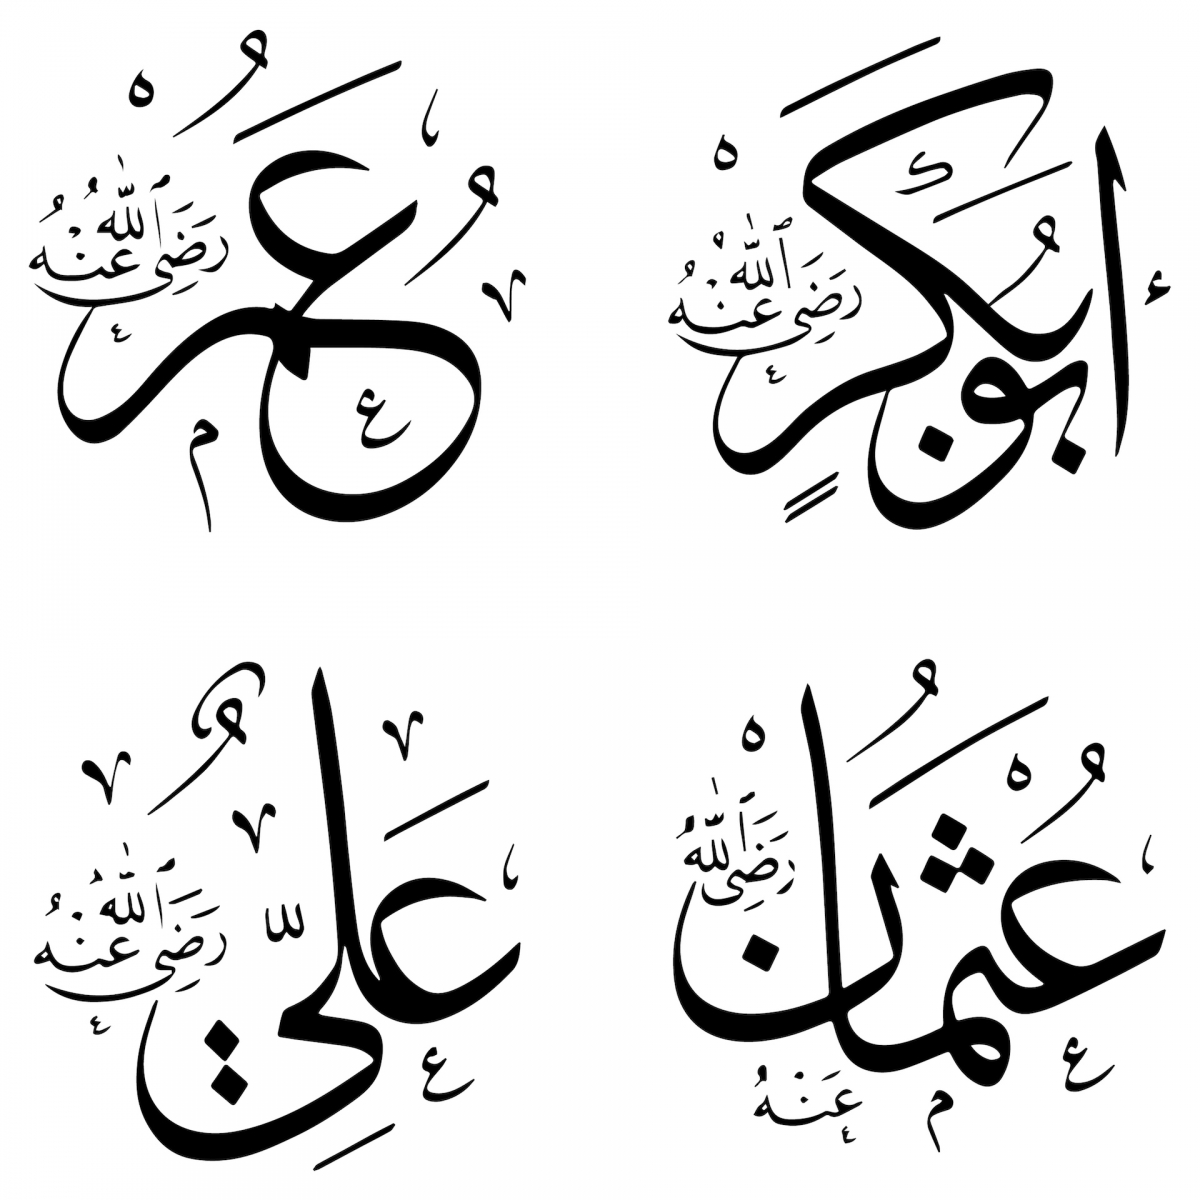 Les noms des califes Rashidun dans l'inscription islamique.  Ebu Bekir, Omer, Osman et Ali.  4 plaques nominatives des califes rashidun décorent tous les édifices religieux du monde islamique